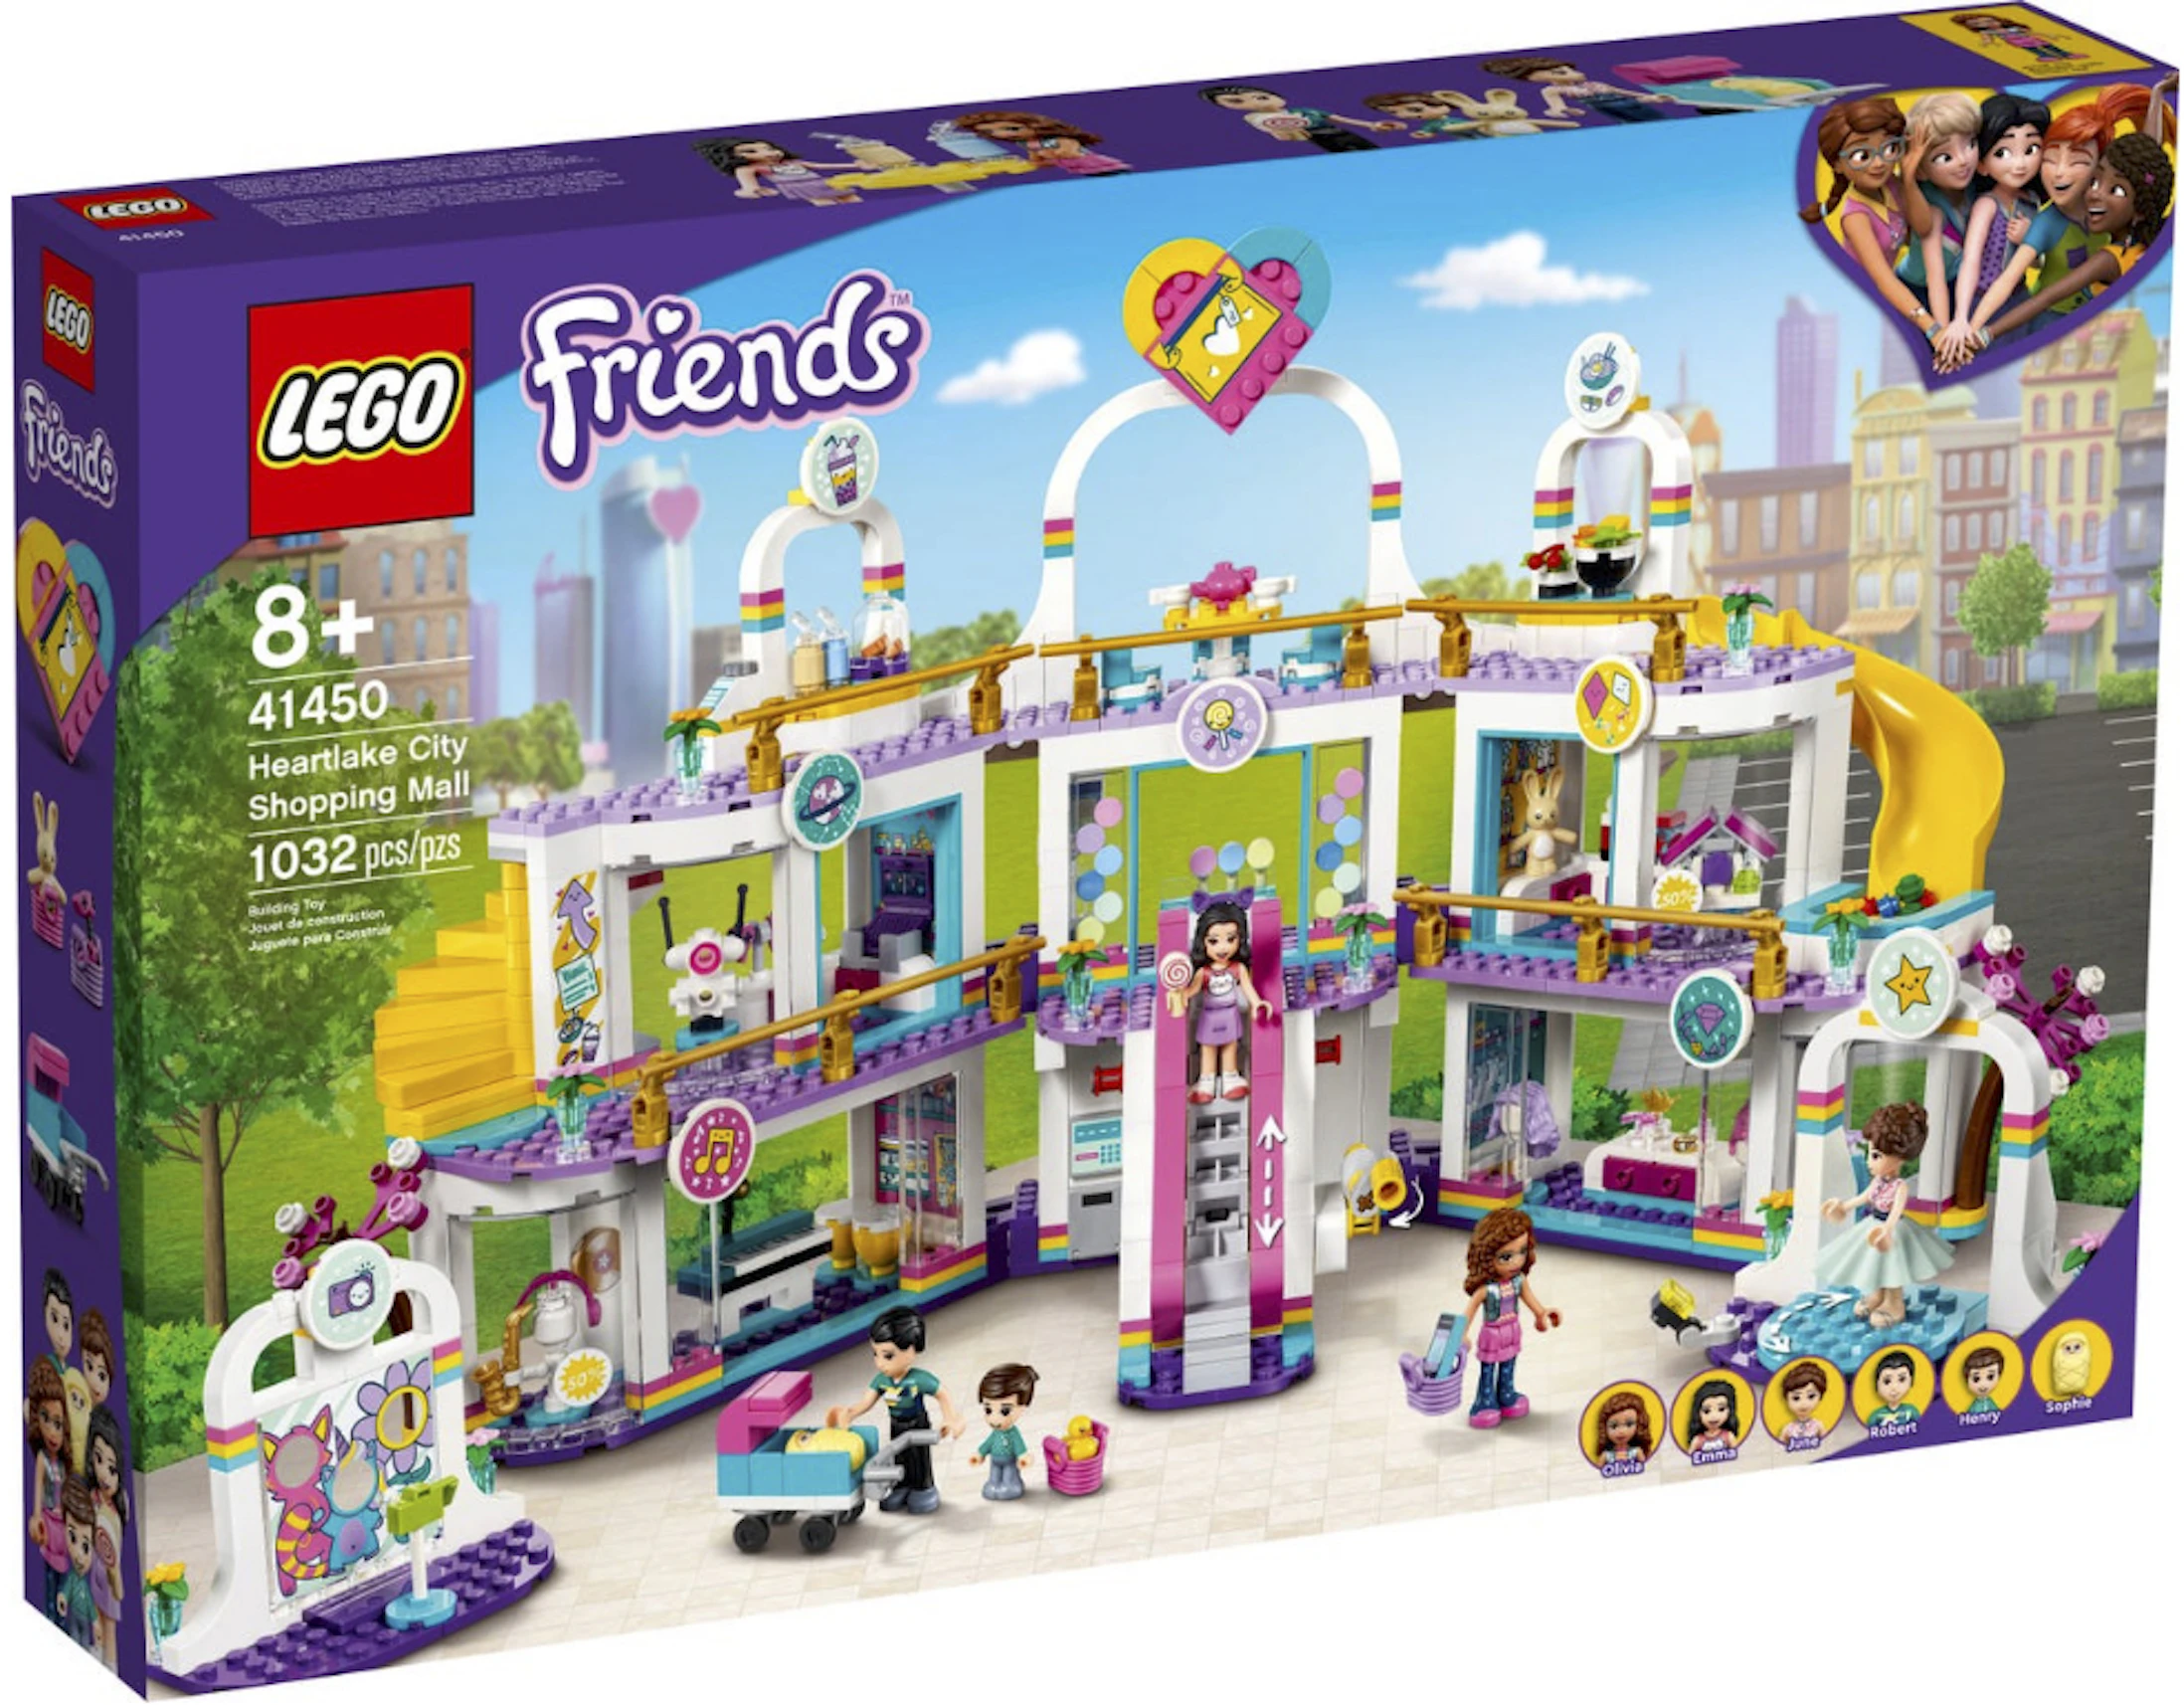 LEGO Friends Heartlake City Set - US